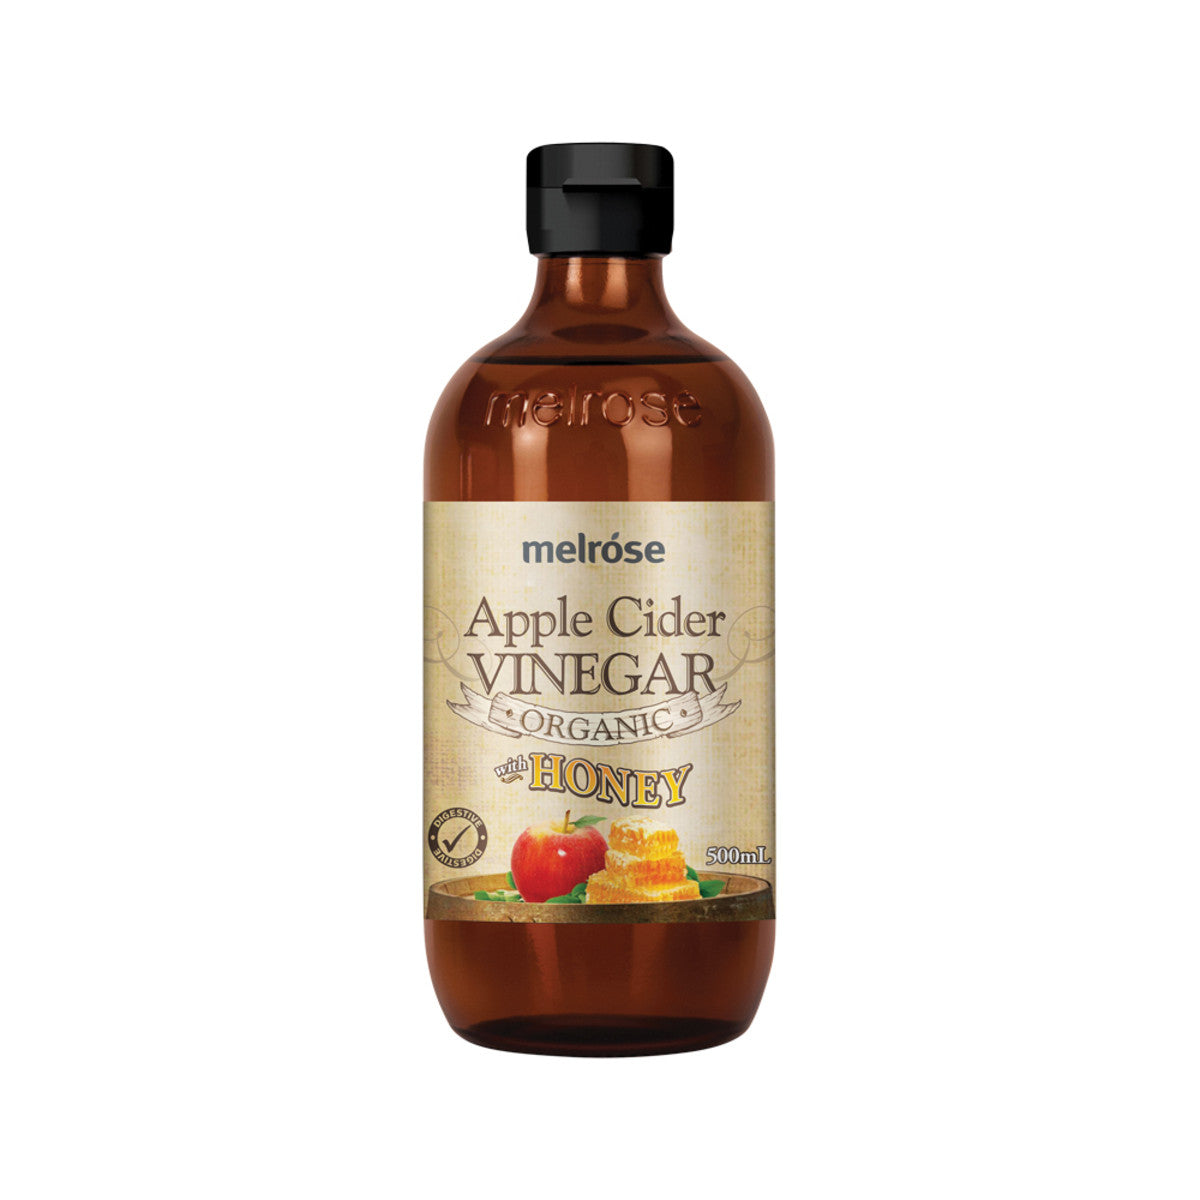 Melrose Organic Apple Cider Vinegar with Honey 500ml-The Living Co.